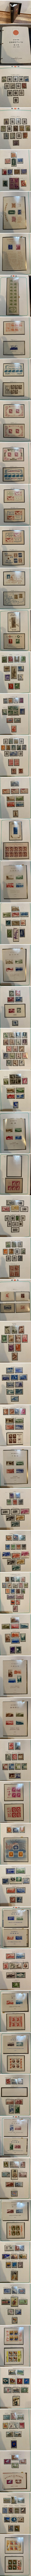 日本切手アルバム 第2巻 1945~1959年(38P～97P) 抜けあり